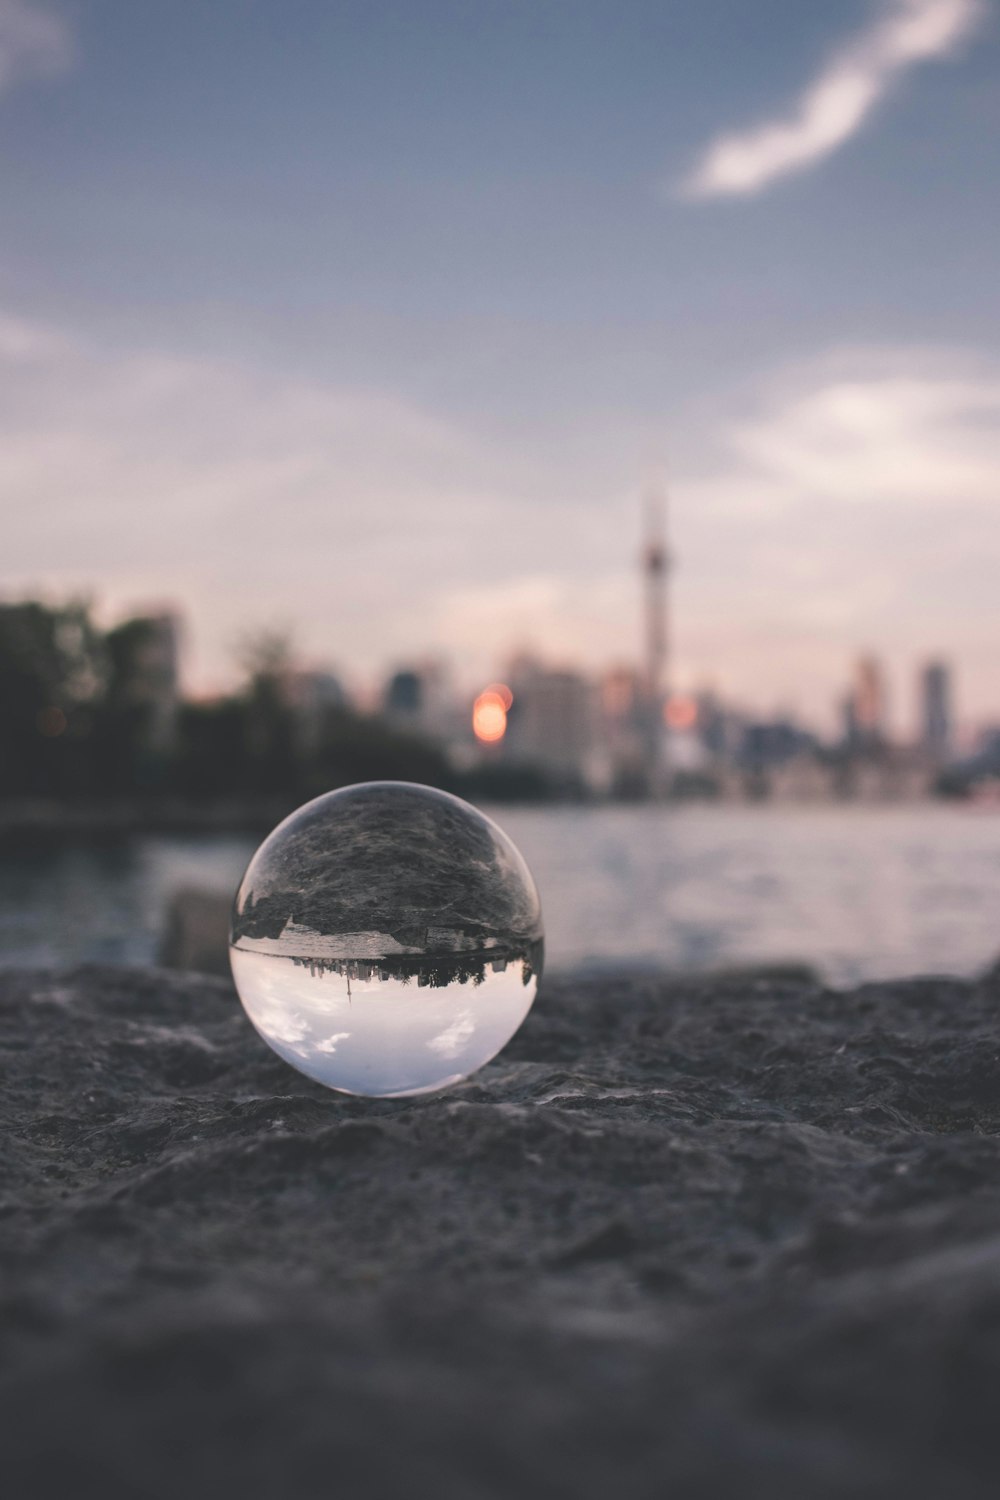 Photographie sélective de la boule de verre sur un sol sablonneux